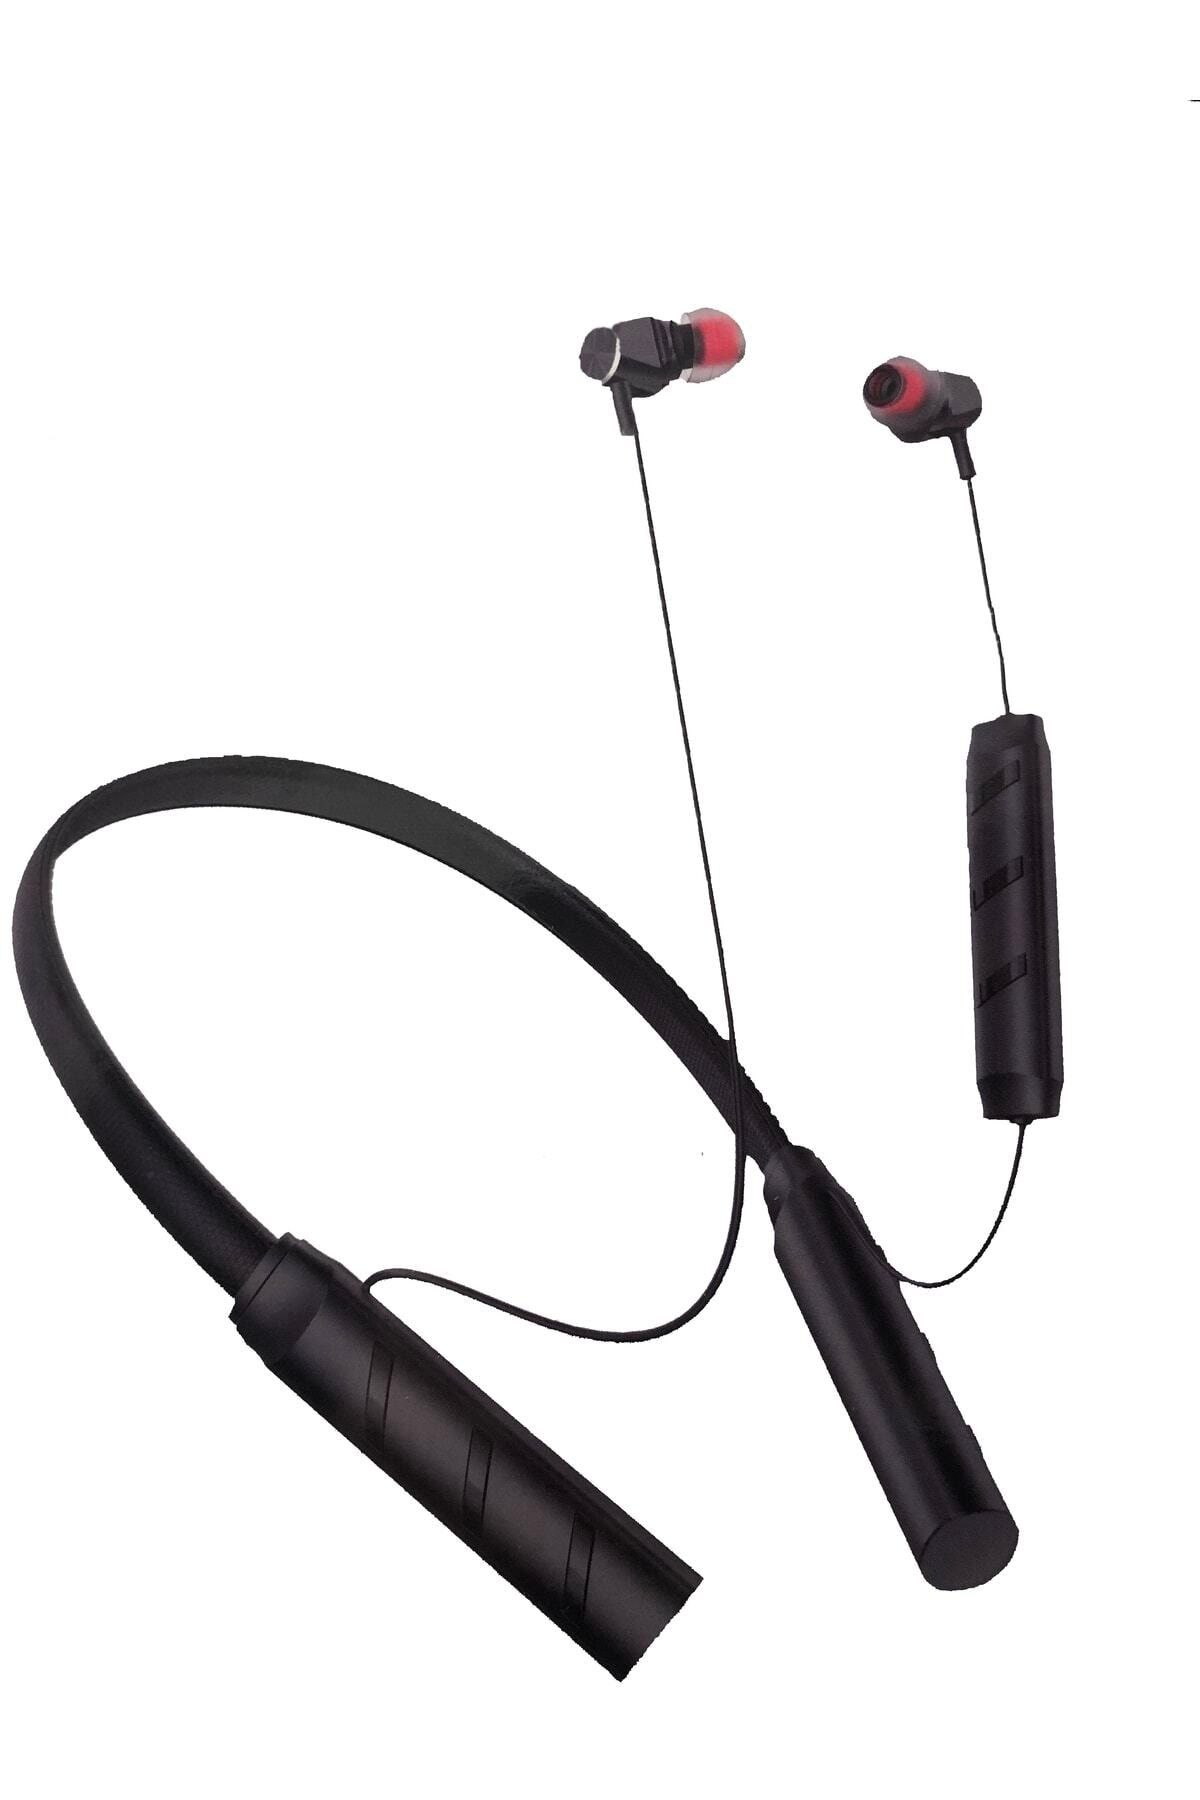 Linktech Link Tech H994 Boyun Askılı Kulak Içi Bluetooth Kulaklık 136 Saat Konuşma 1600 Mah